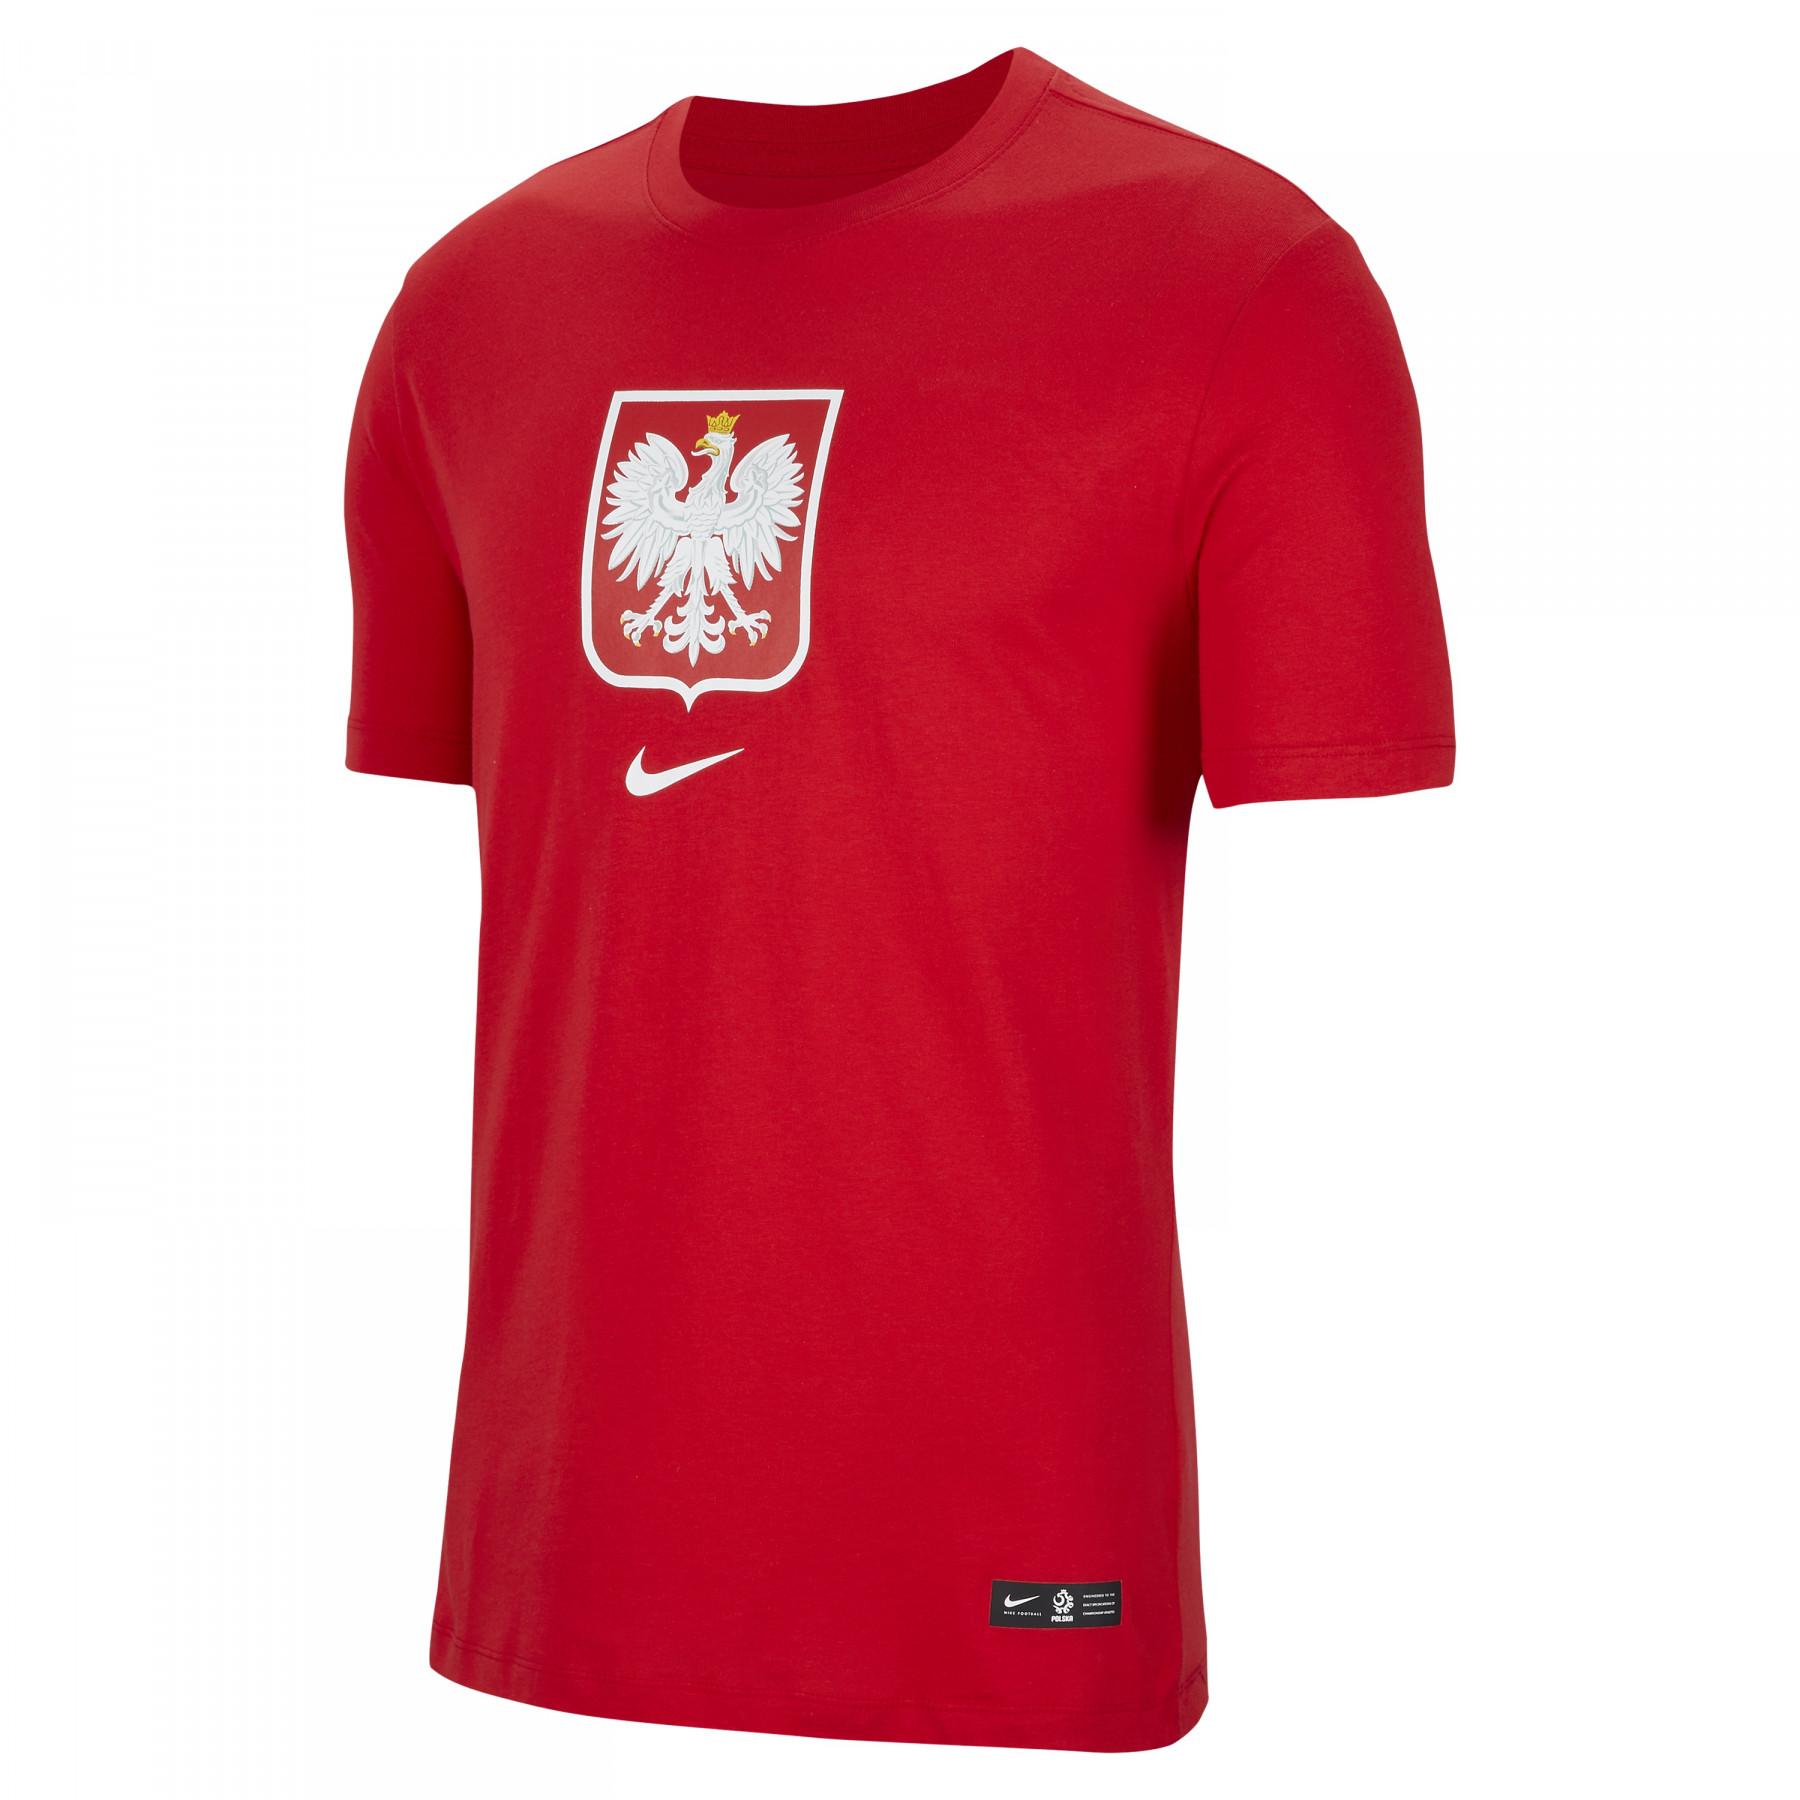 Camiseta Pologne Evergreen Crest